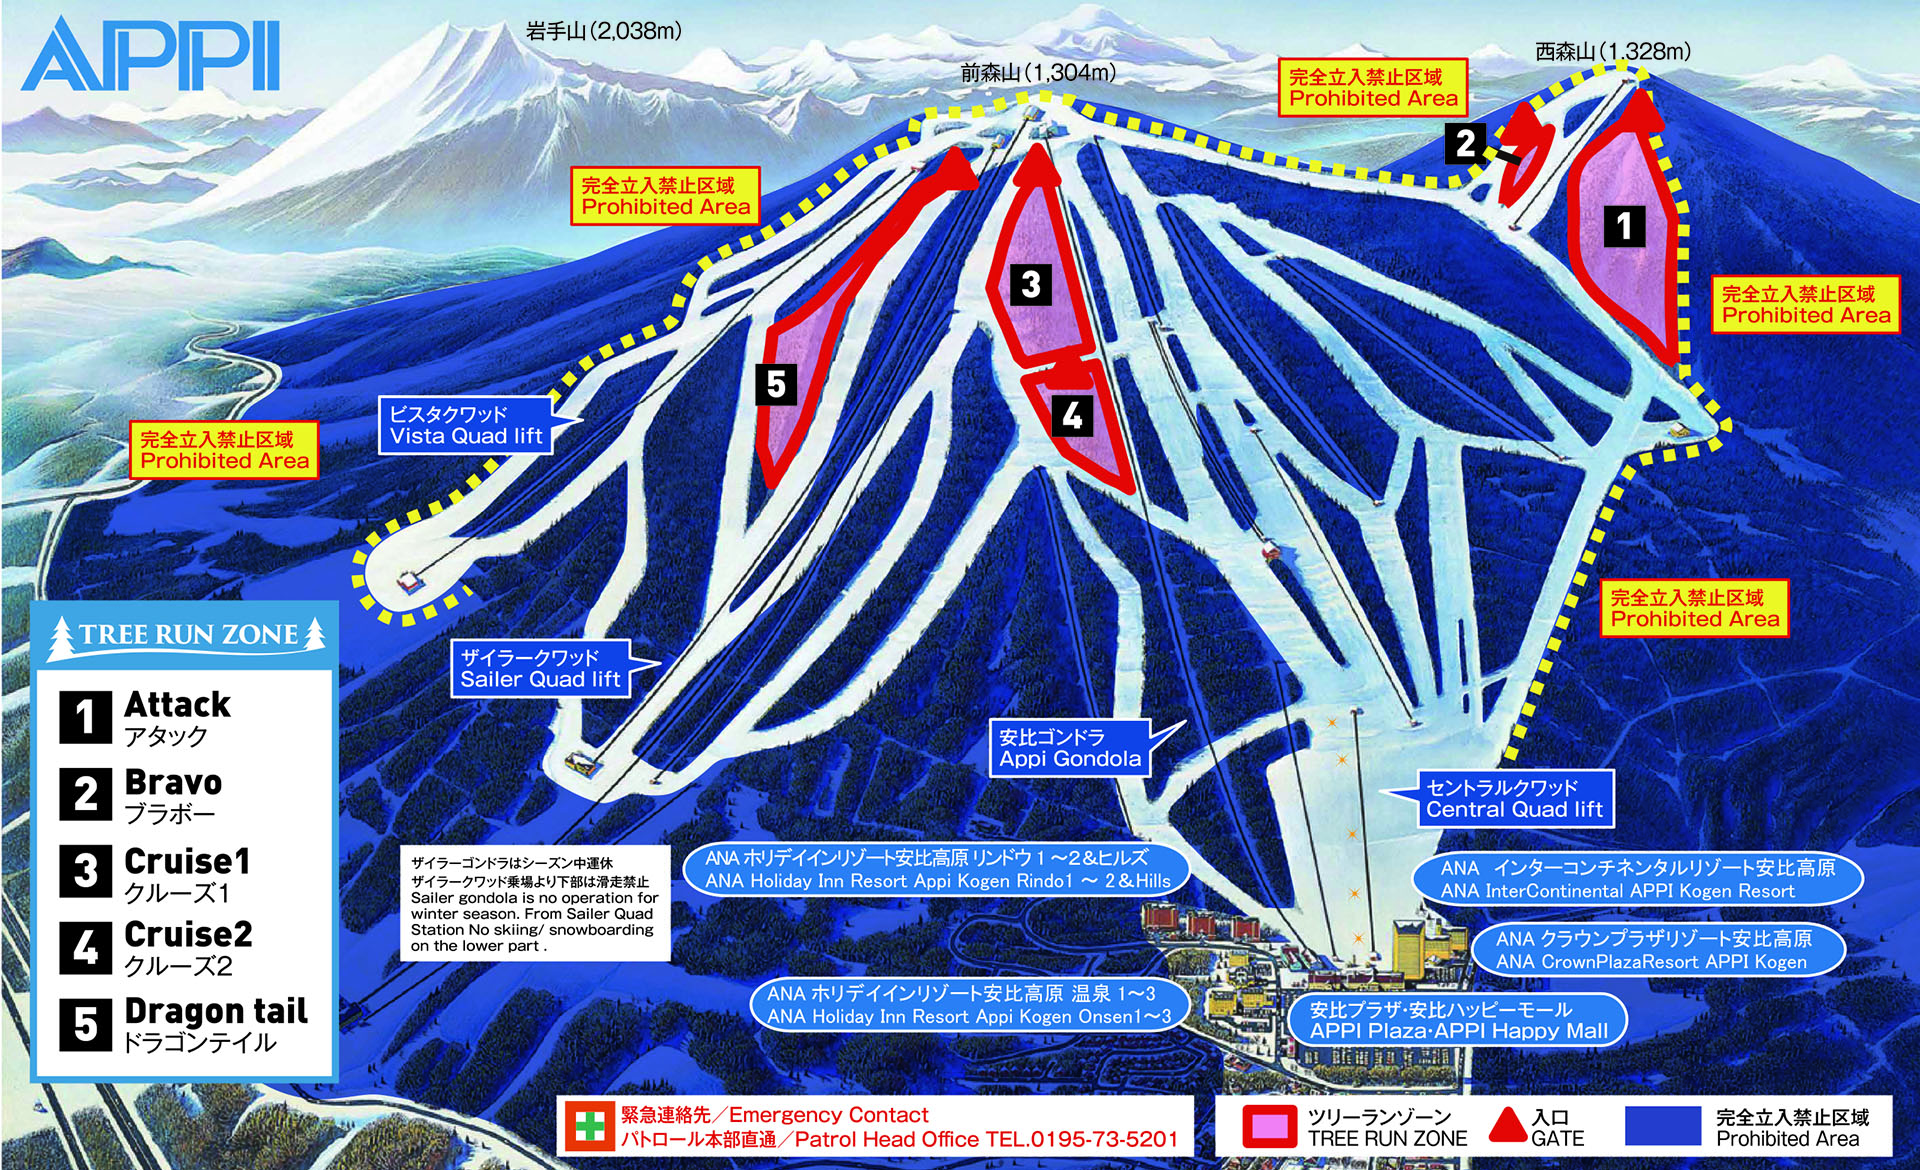 安比高原スキー場 ツリーランゾーン